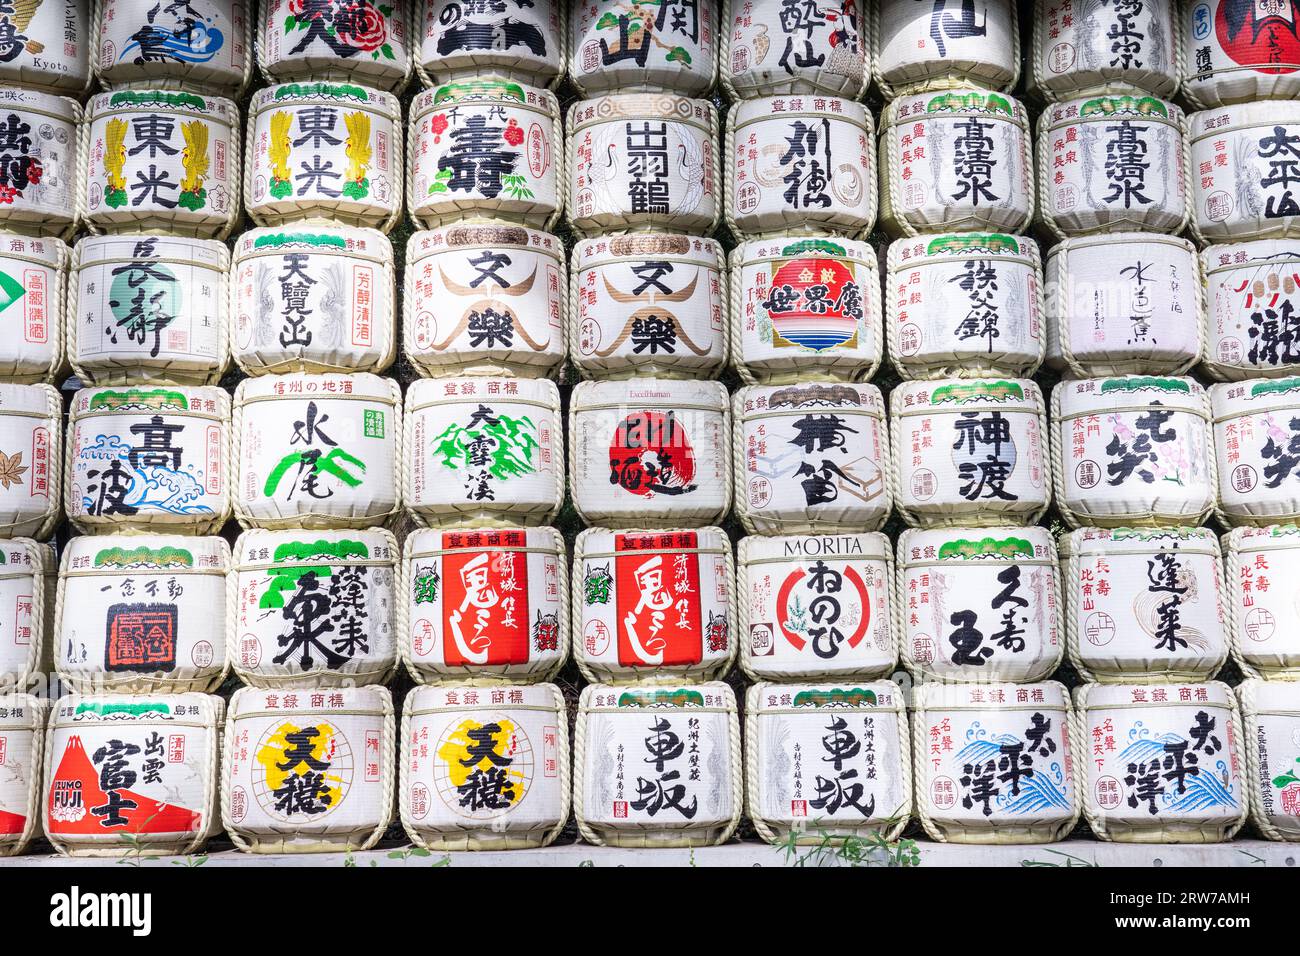 Pile di colorate botti di sake giapponesi donate dai distillatori all'ingresso sud del Meiji Jingu, situato all'interno di una foresta di 170 acri, a Shibuya, Tokyo, Giappone. Il santuario shintoista è dedicato agli spiriti dell'imperatore Meiji e di sua moglie, l'imperatrice Shoken. Foto Stock